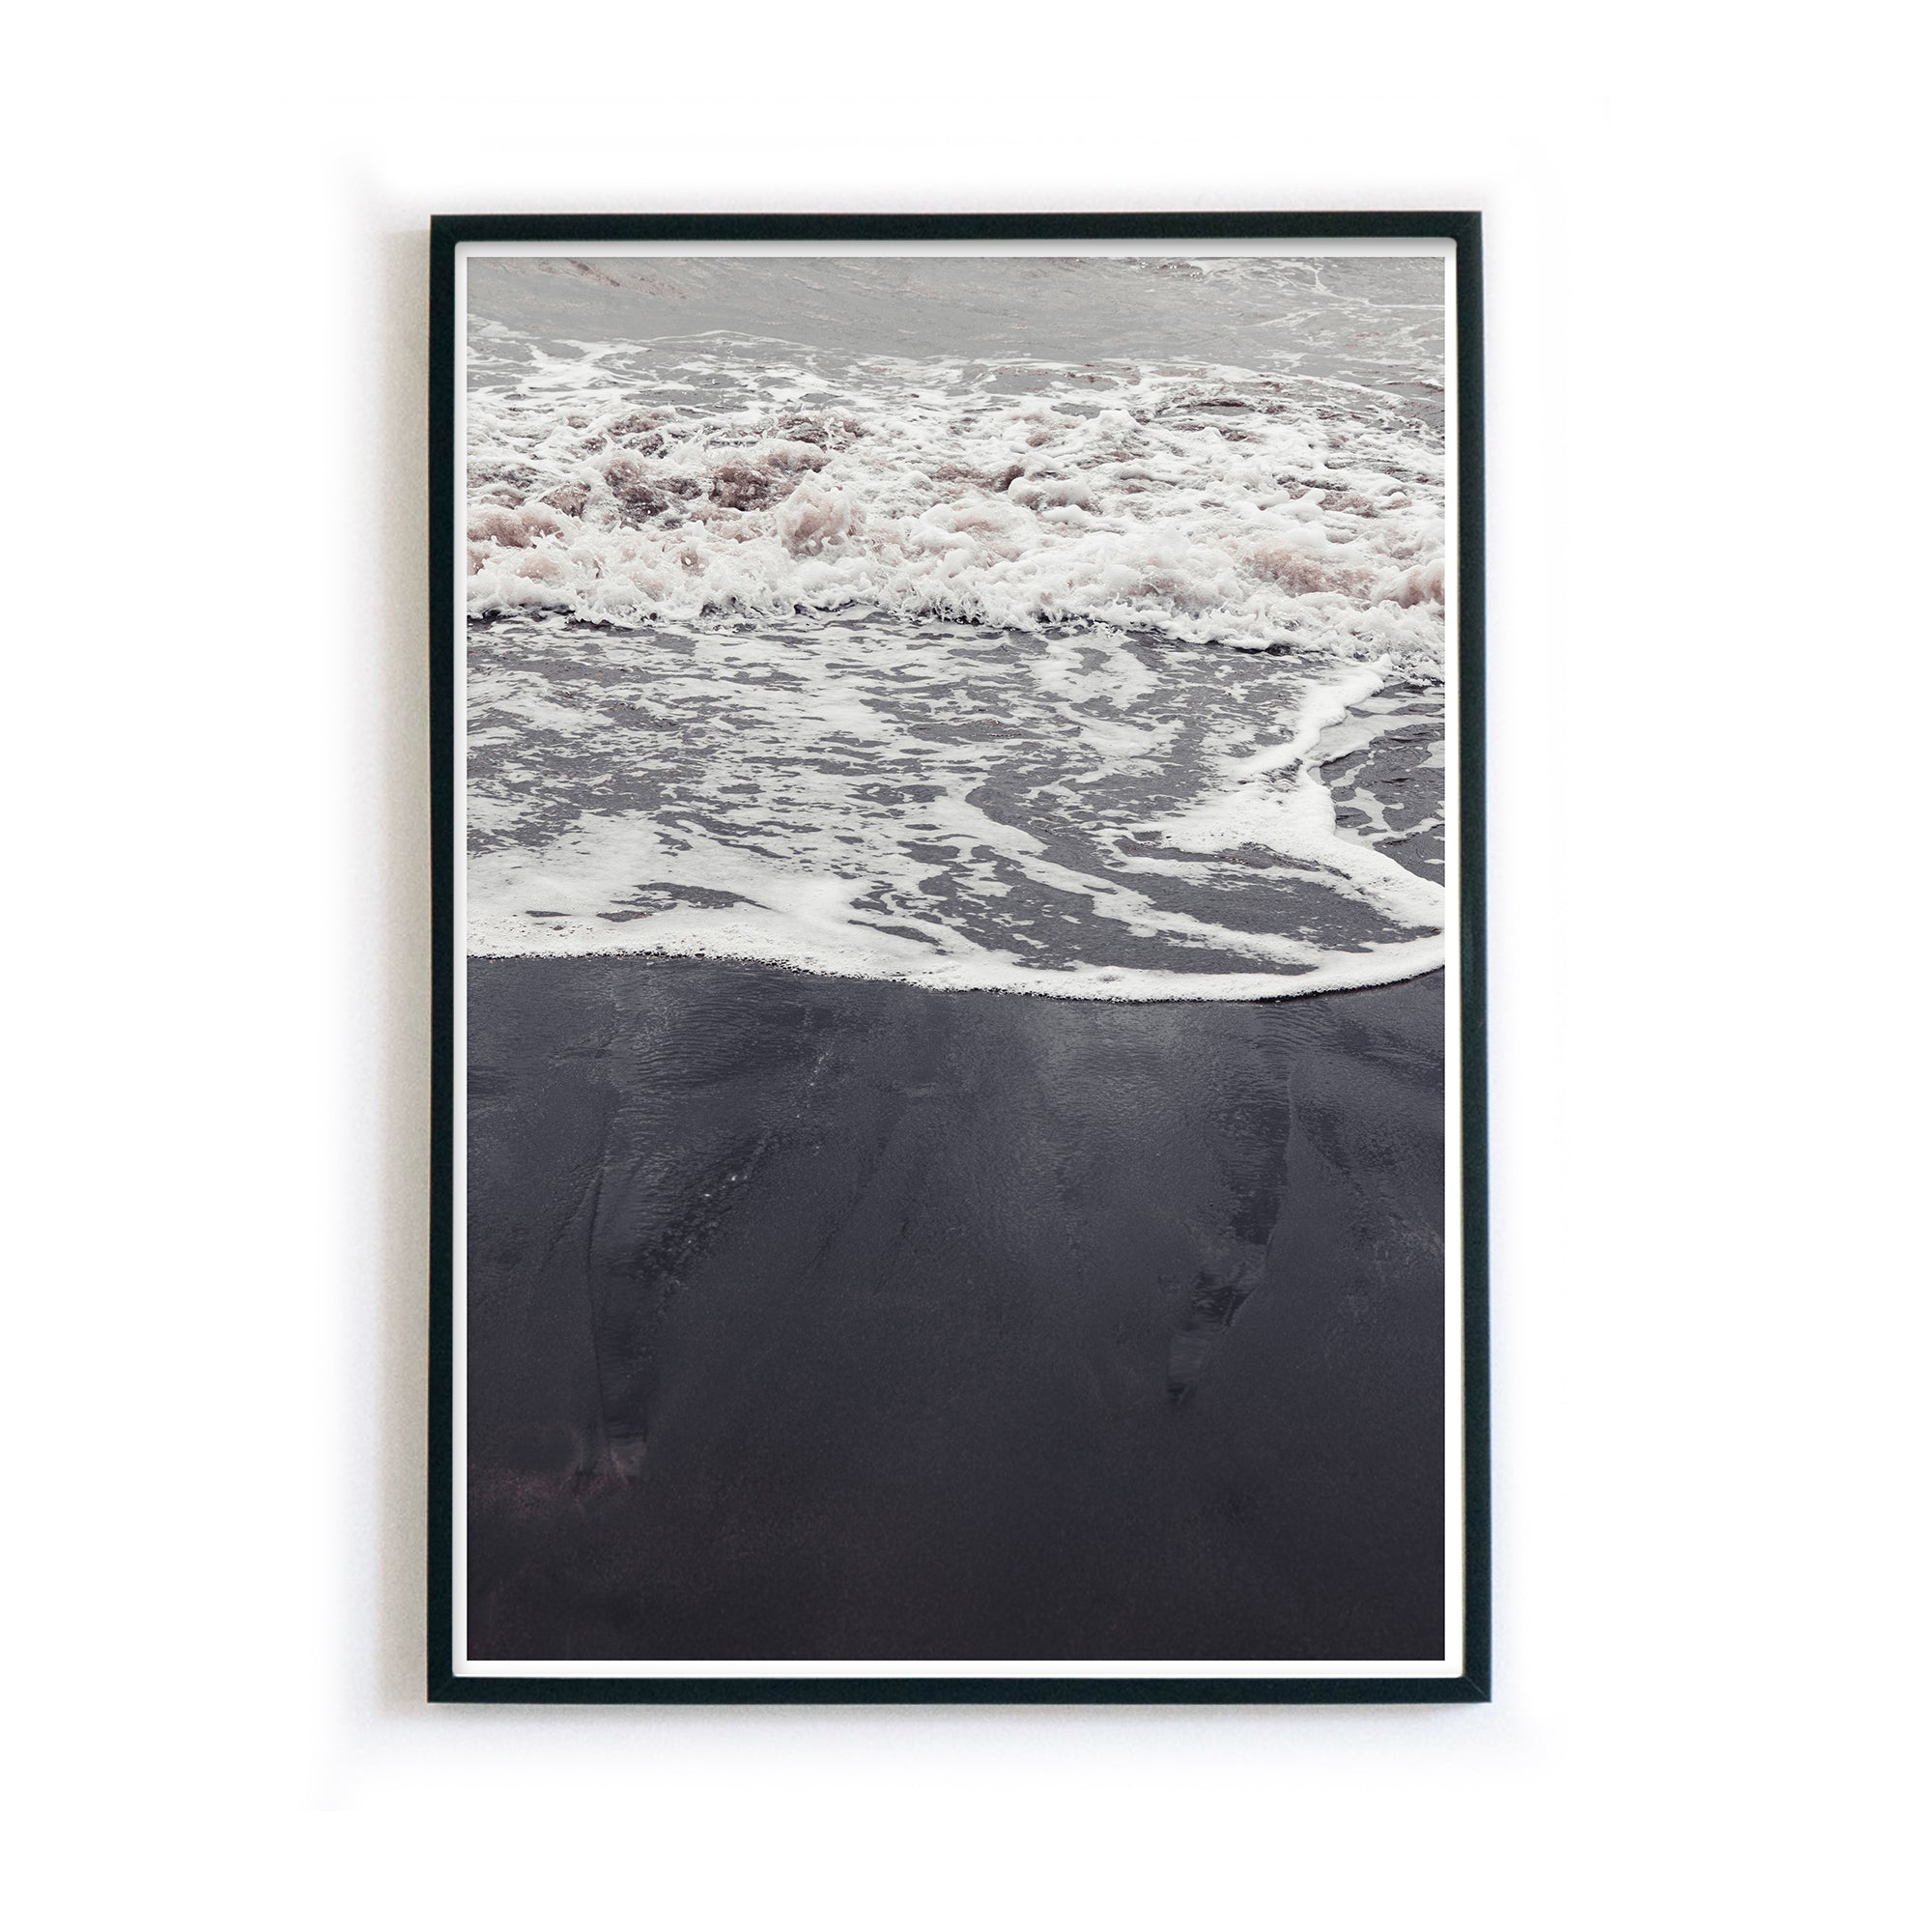 4one-Pictures-poster-natur-schwarz-weiss-strand-sand-wellen-meer-beach-bilderrahmen-2_a16d2325-61bb-4c11-9432-761aa18b9182.jpg